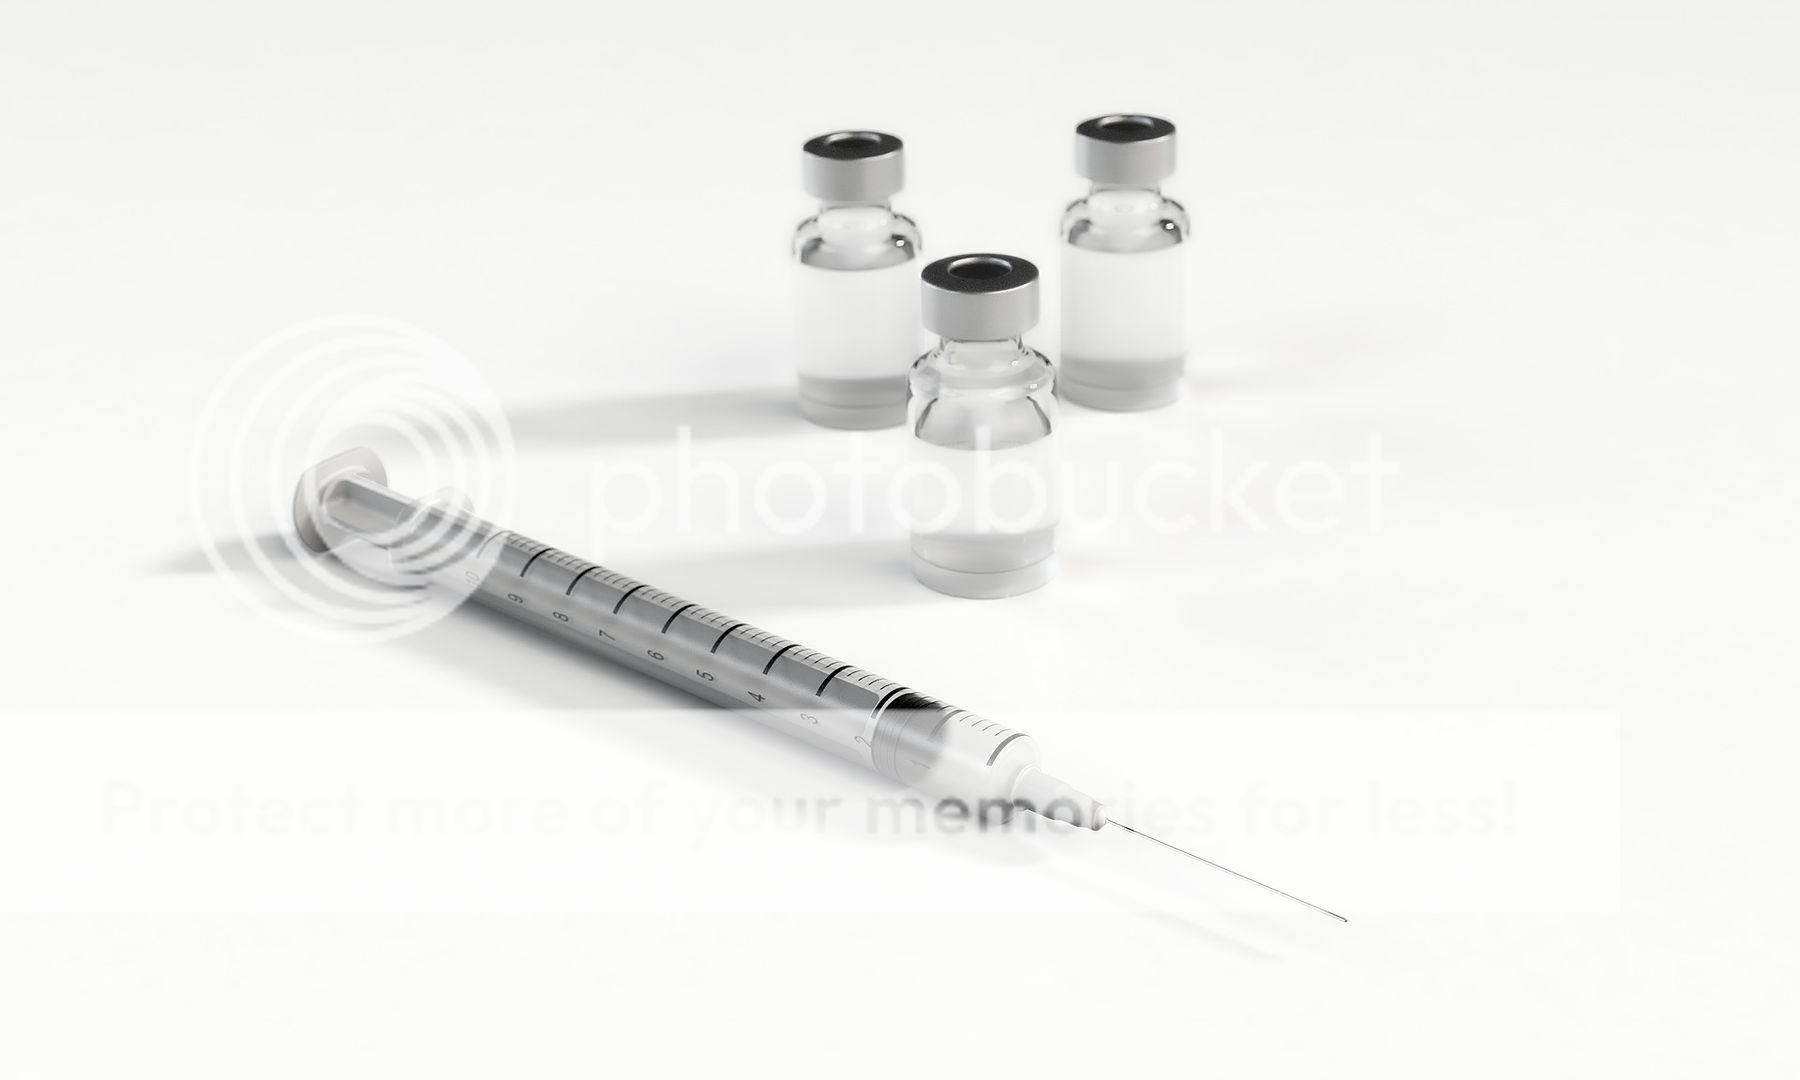 human chorionic gonadotropin injections